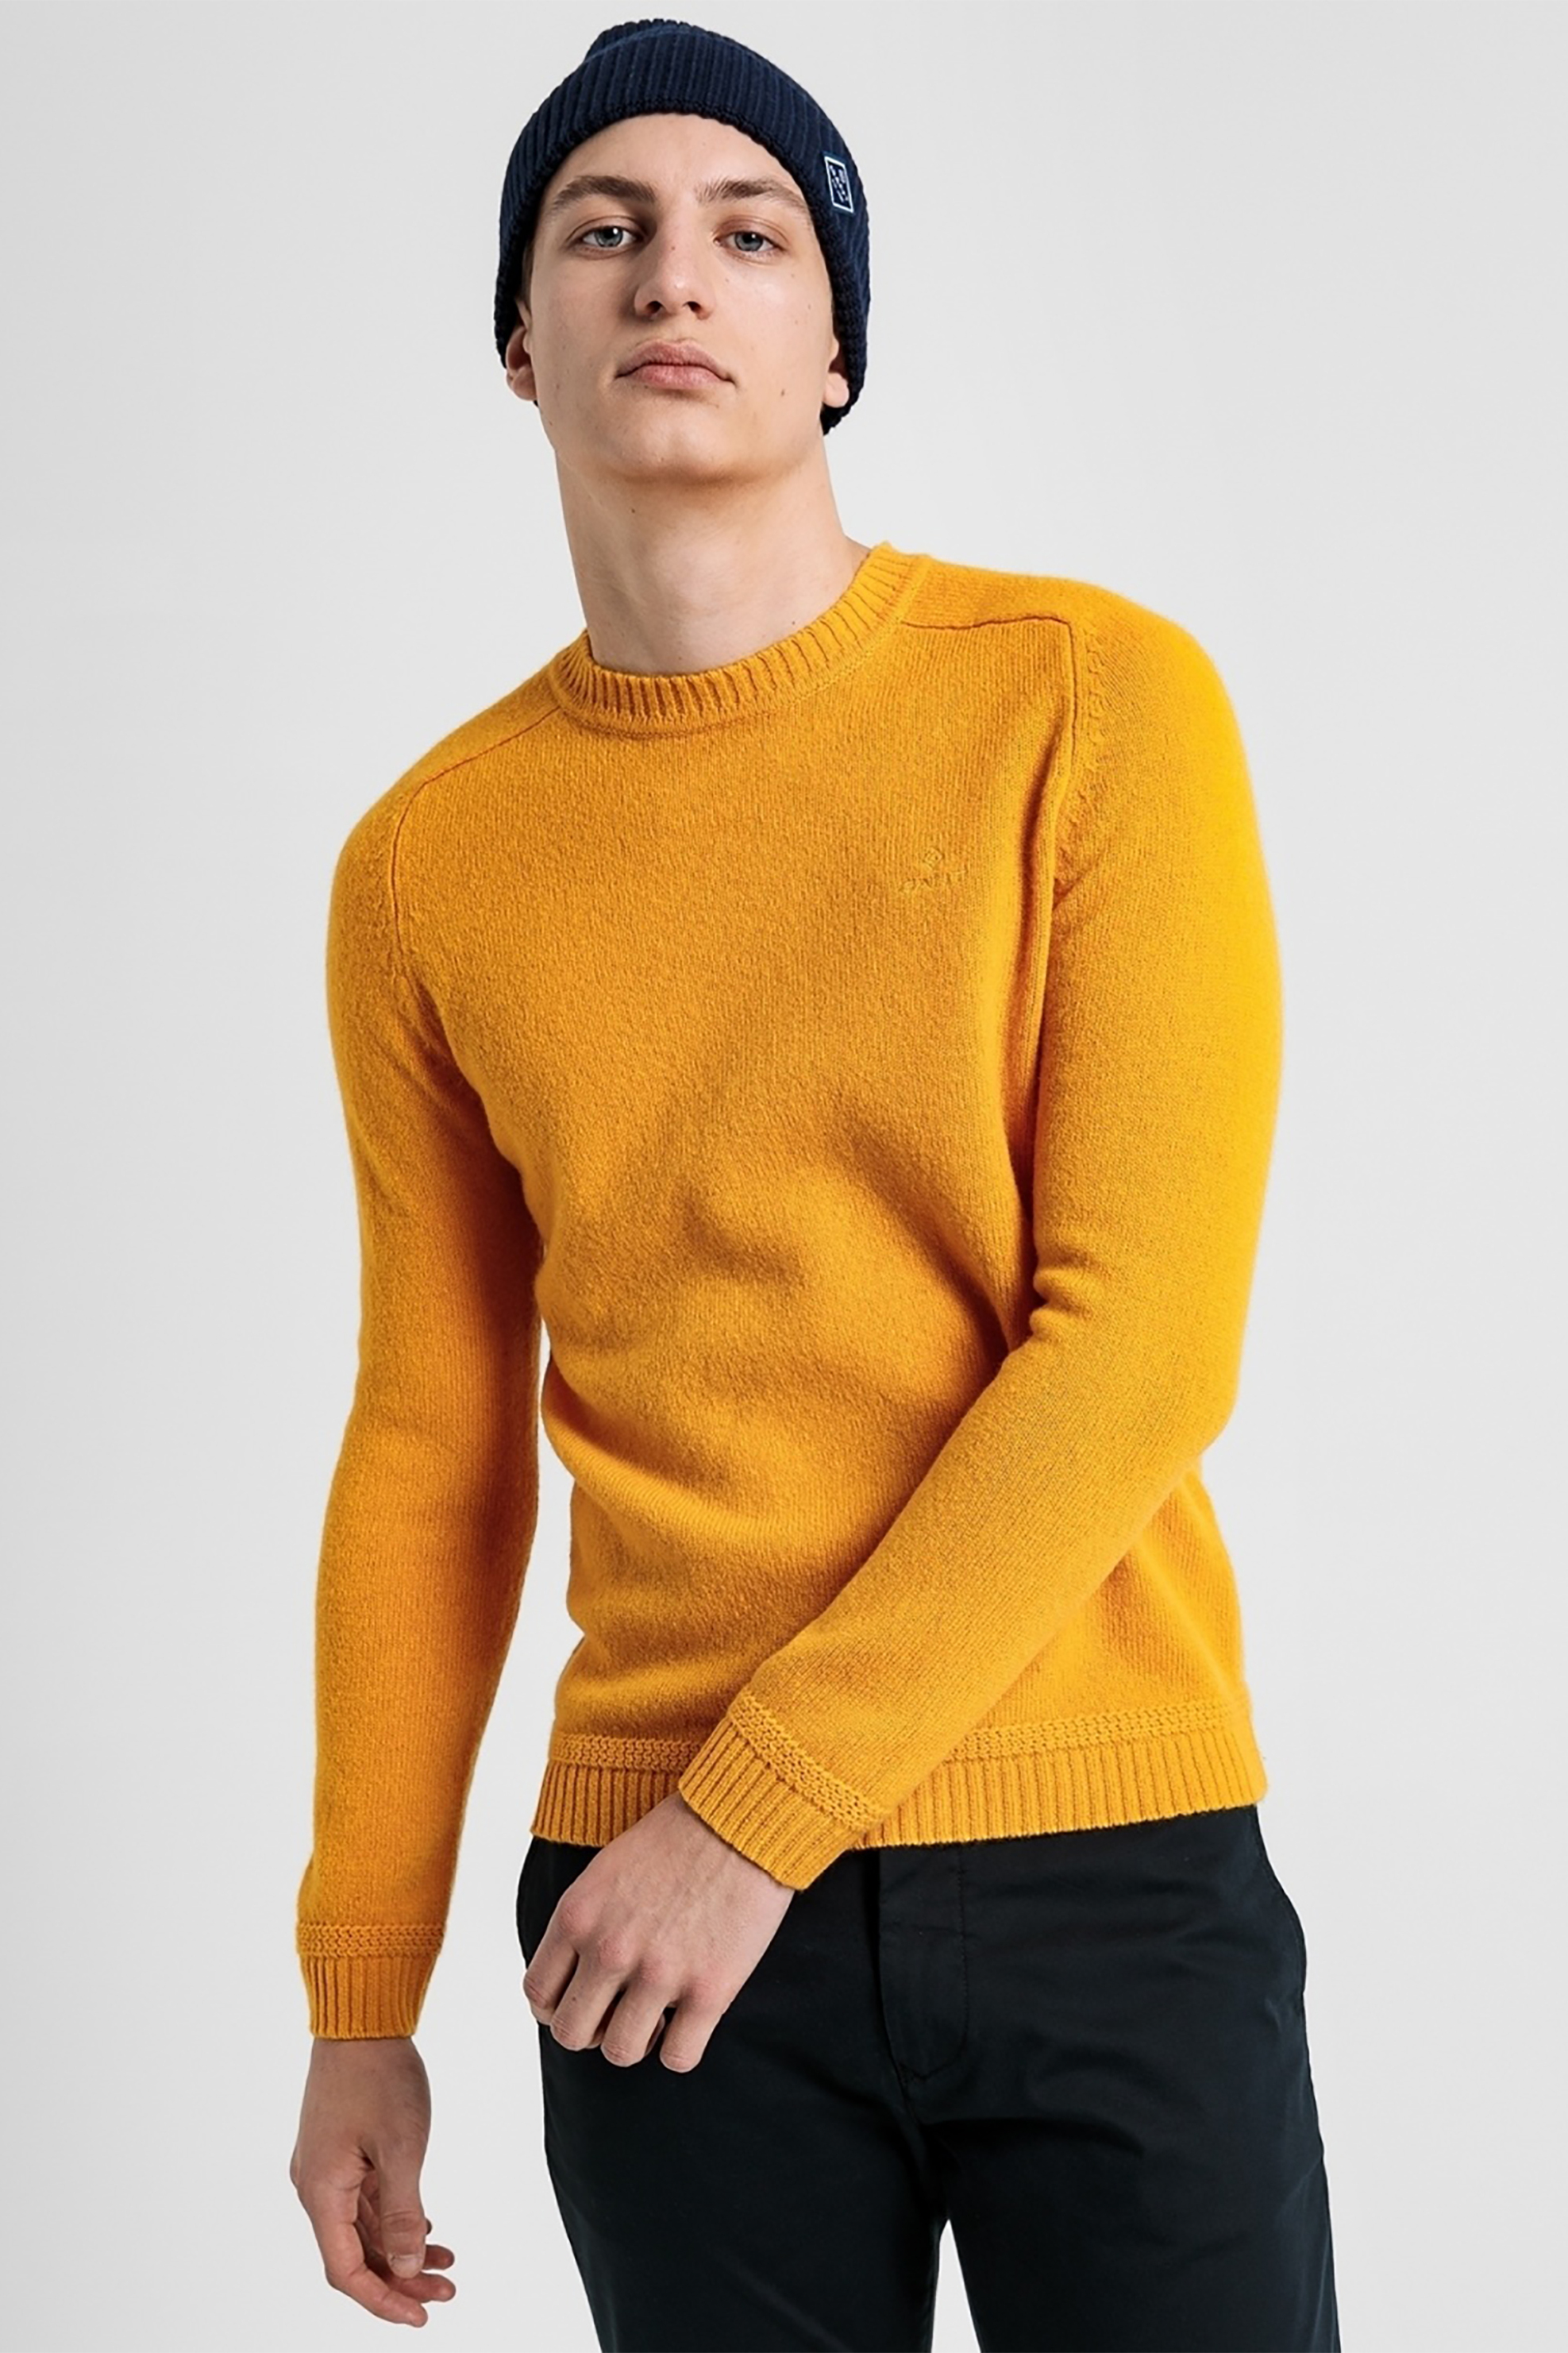 Άνδρας > ΡΟΥΧΑ > Πλεκτά > Πουλόβερ Gant ανδρικό πουλόβερ με στρογγυλή λαιμόκοψη "Shetland" - 8000104 Κίτρινο